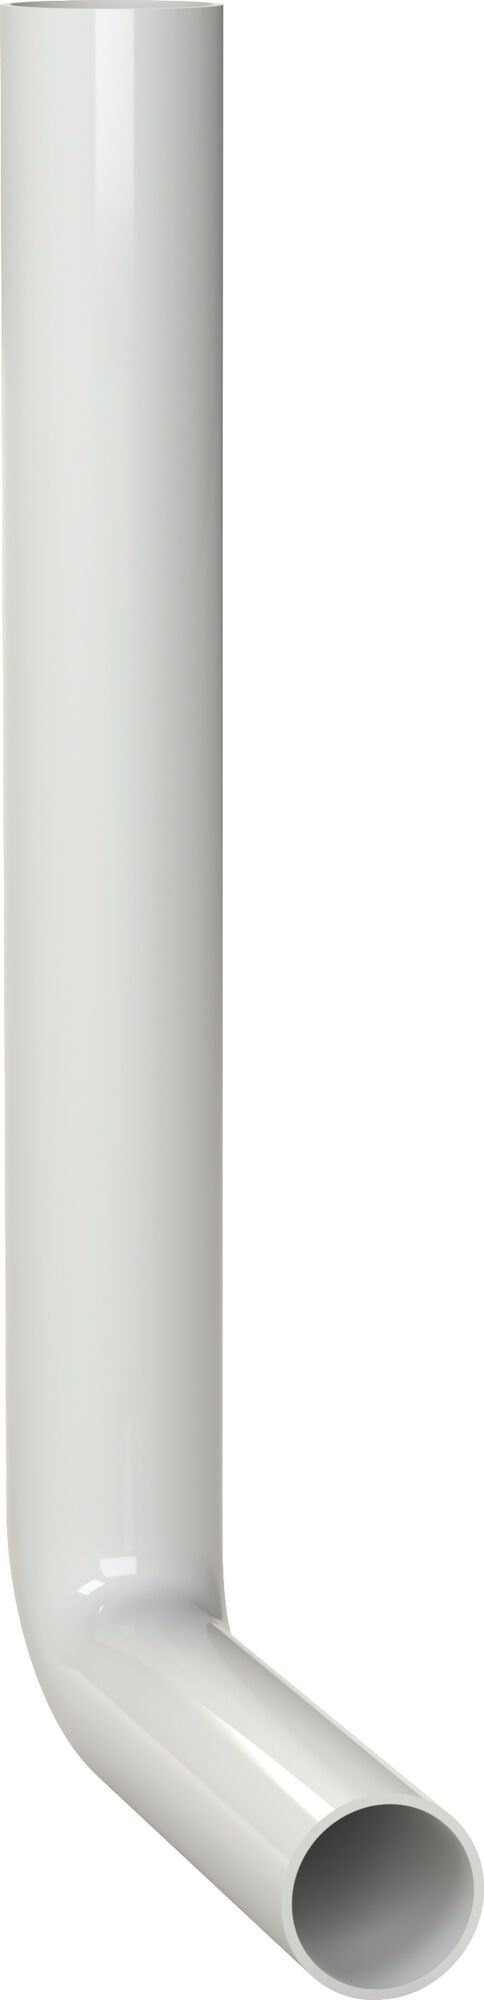 SPÜLROHRBOGEN 380 x 210 mm, weiß